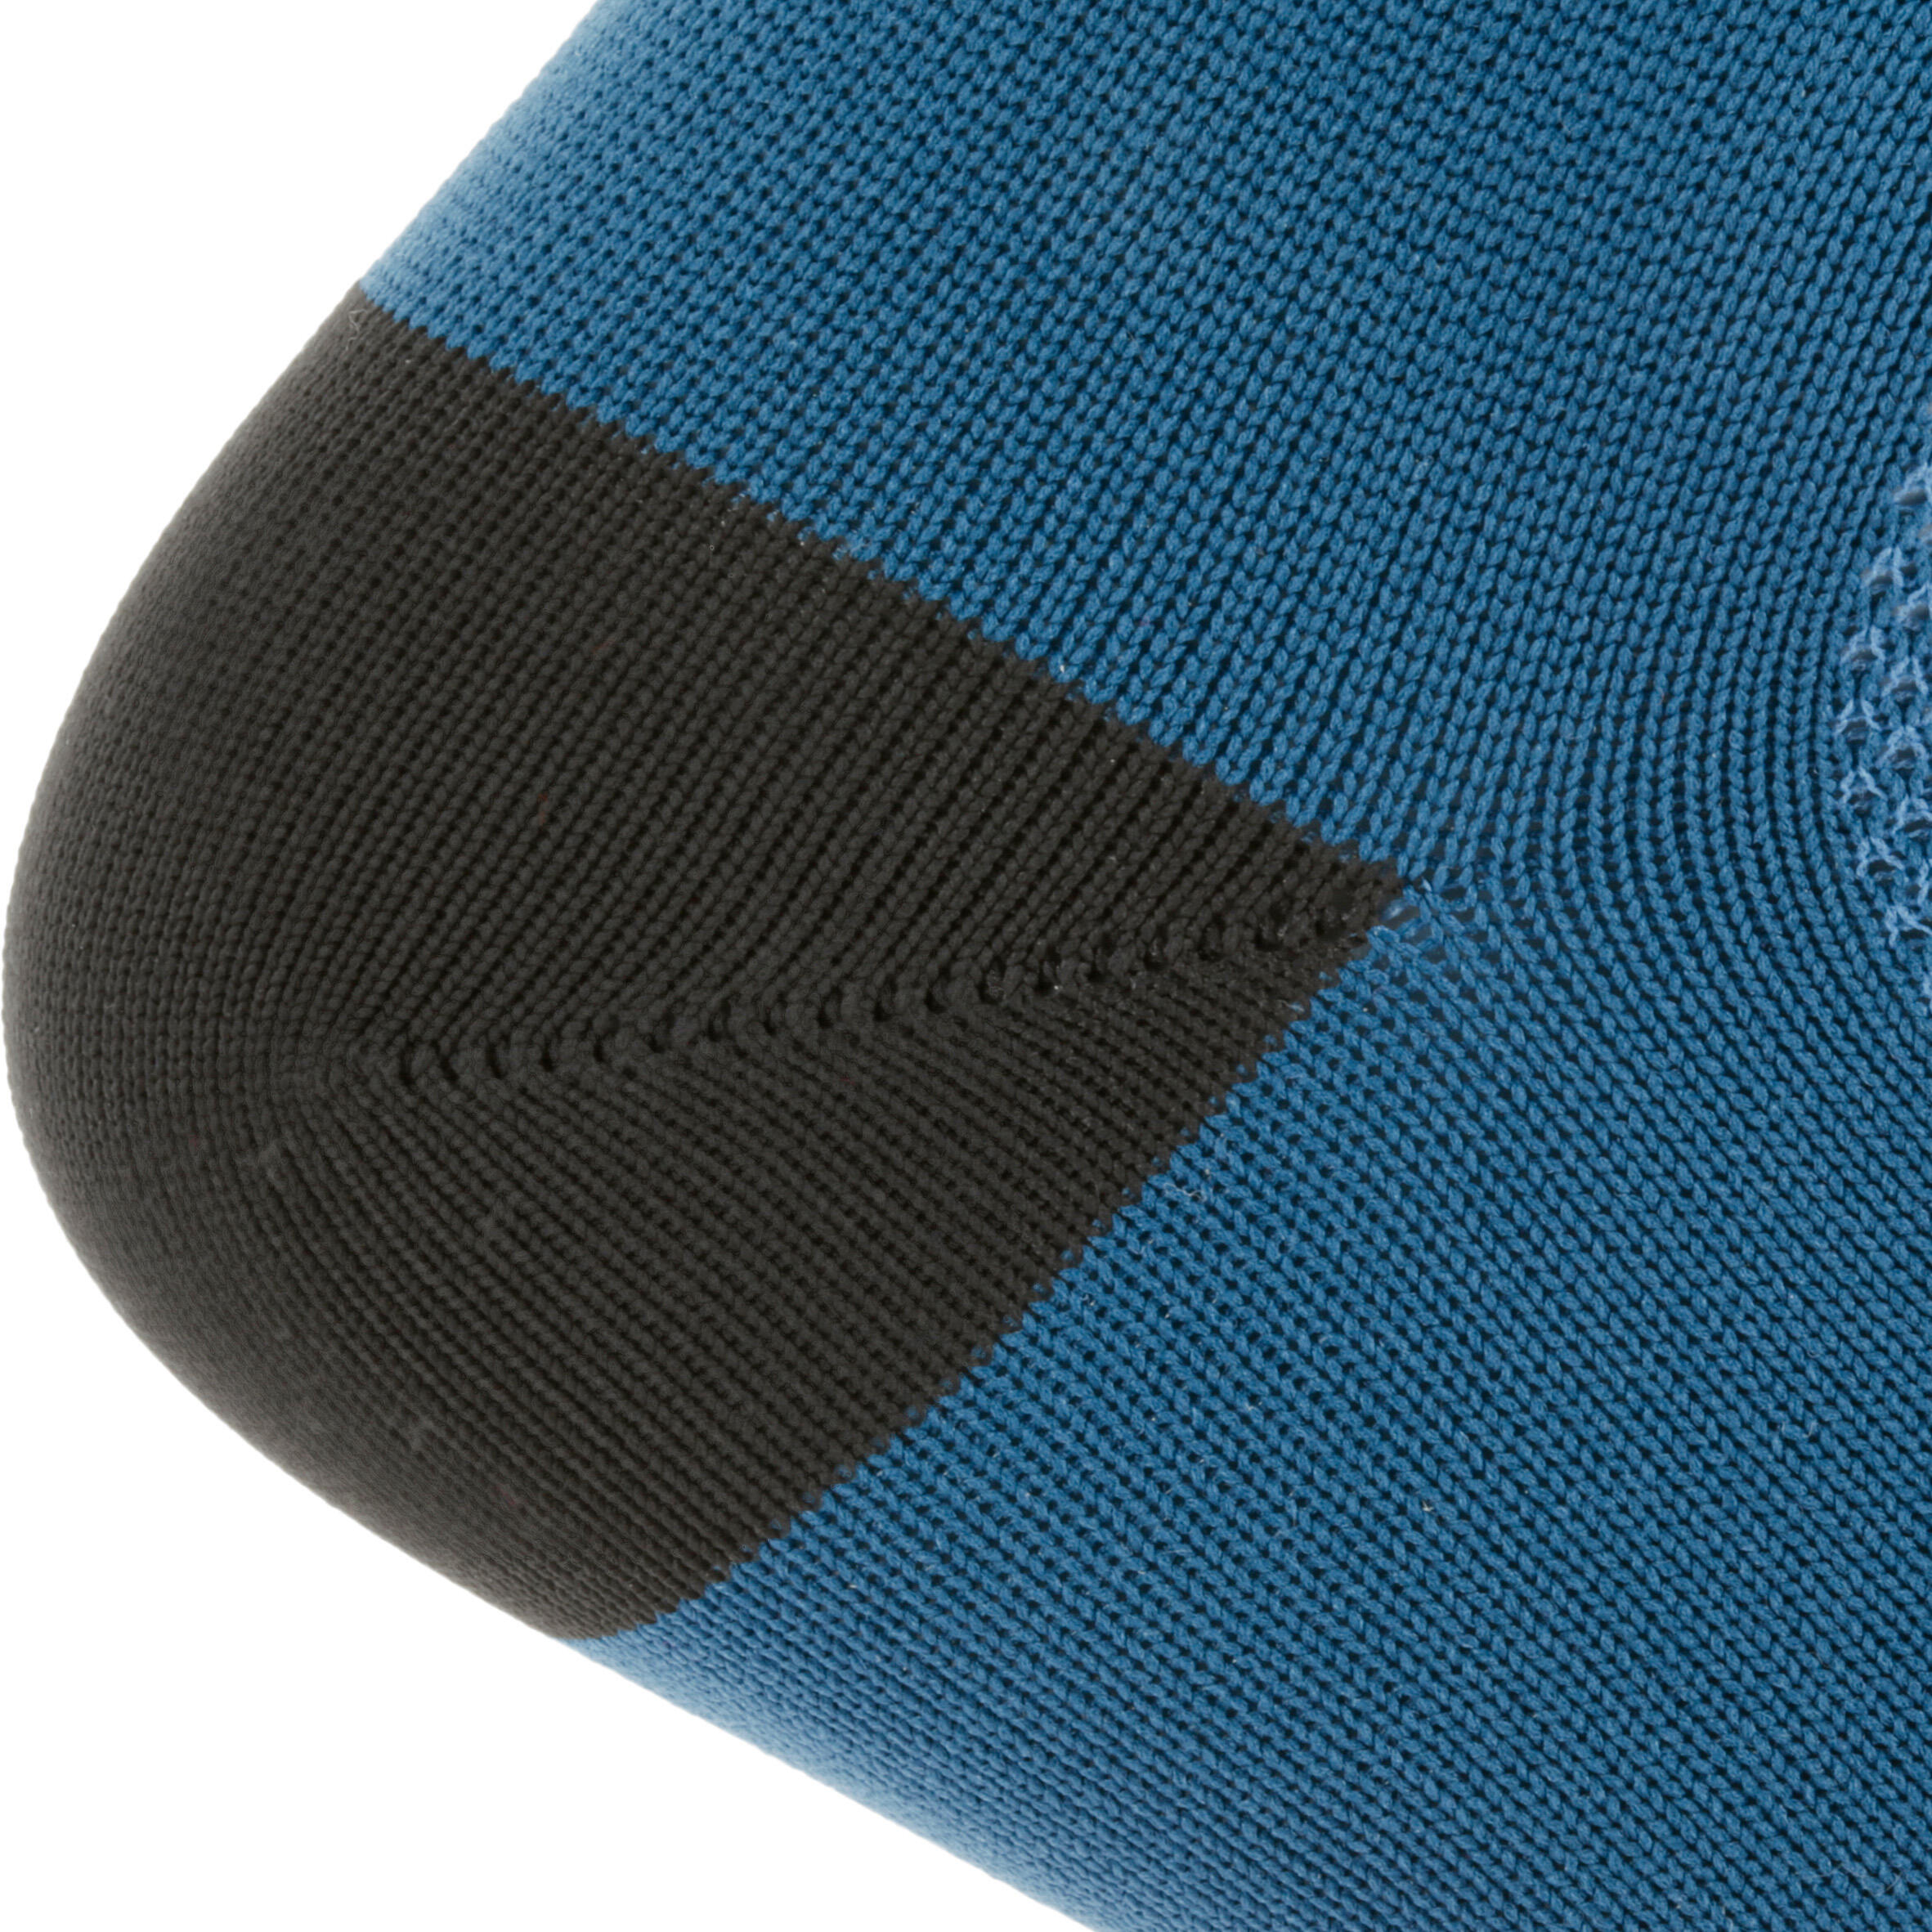 500 Cycling Socks - Dark Blue 6/8